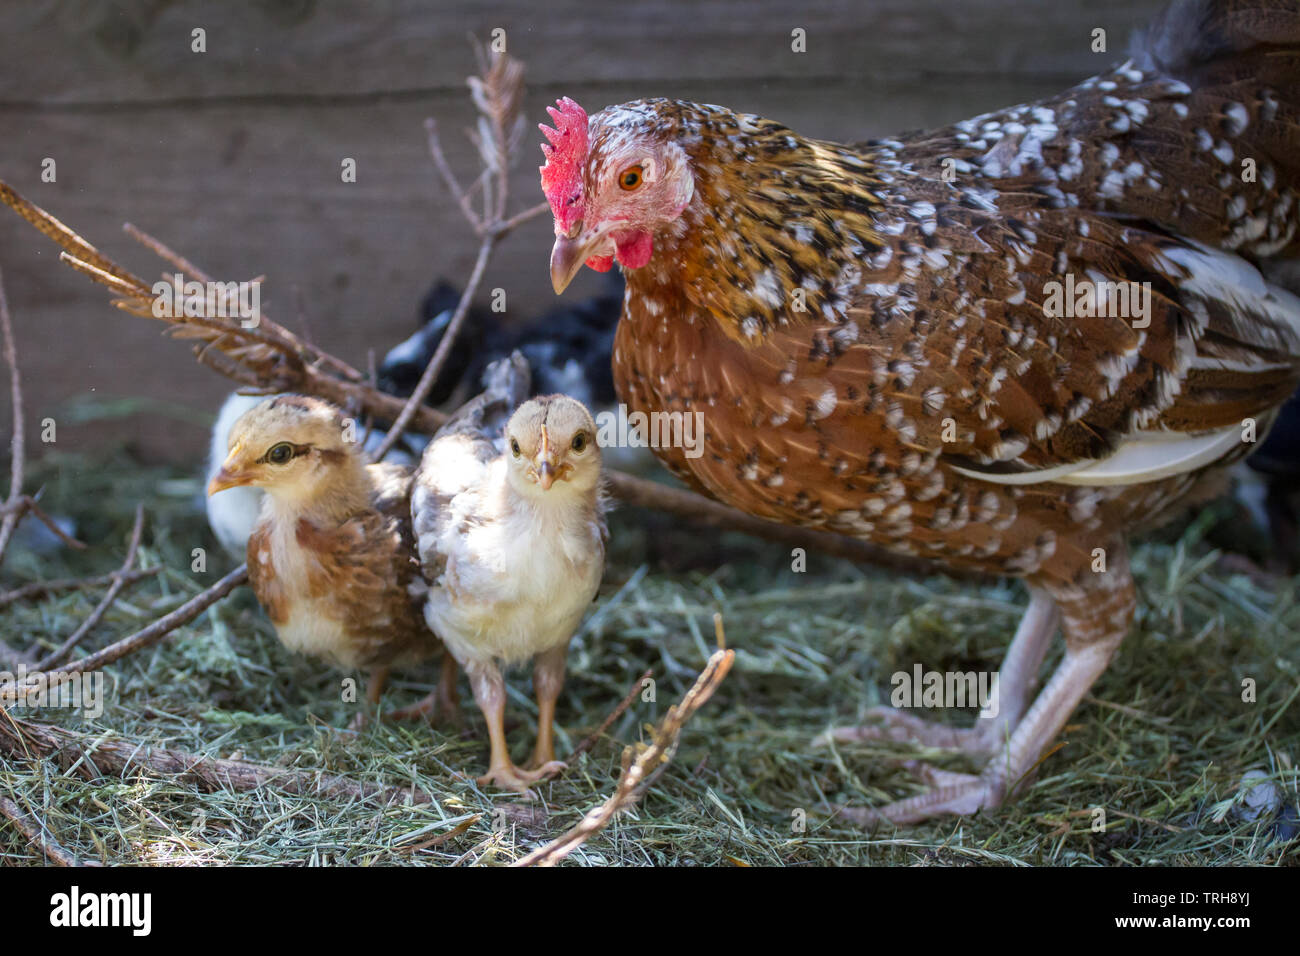 Henne und Ihr flügge der Rasse drei flügge der Rasse Stoapiperl/Steinhendl, einer vom Aussterben bedrohten Rasse Huhn aus Österreich Stockfoto